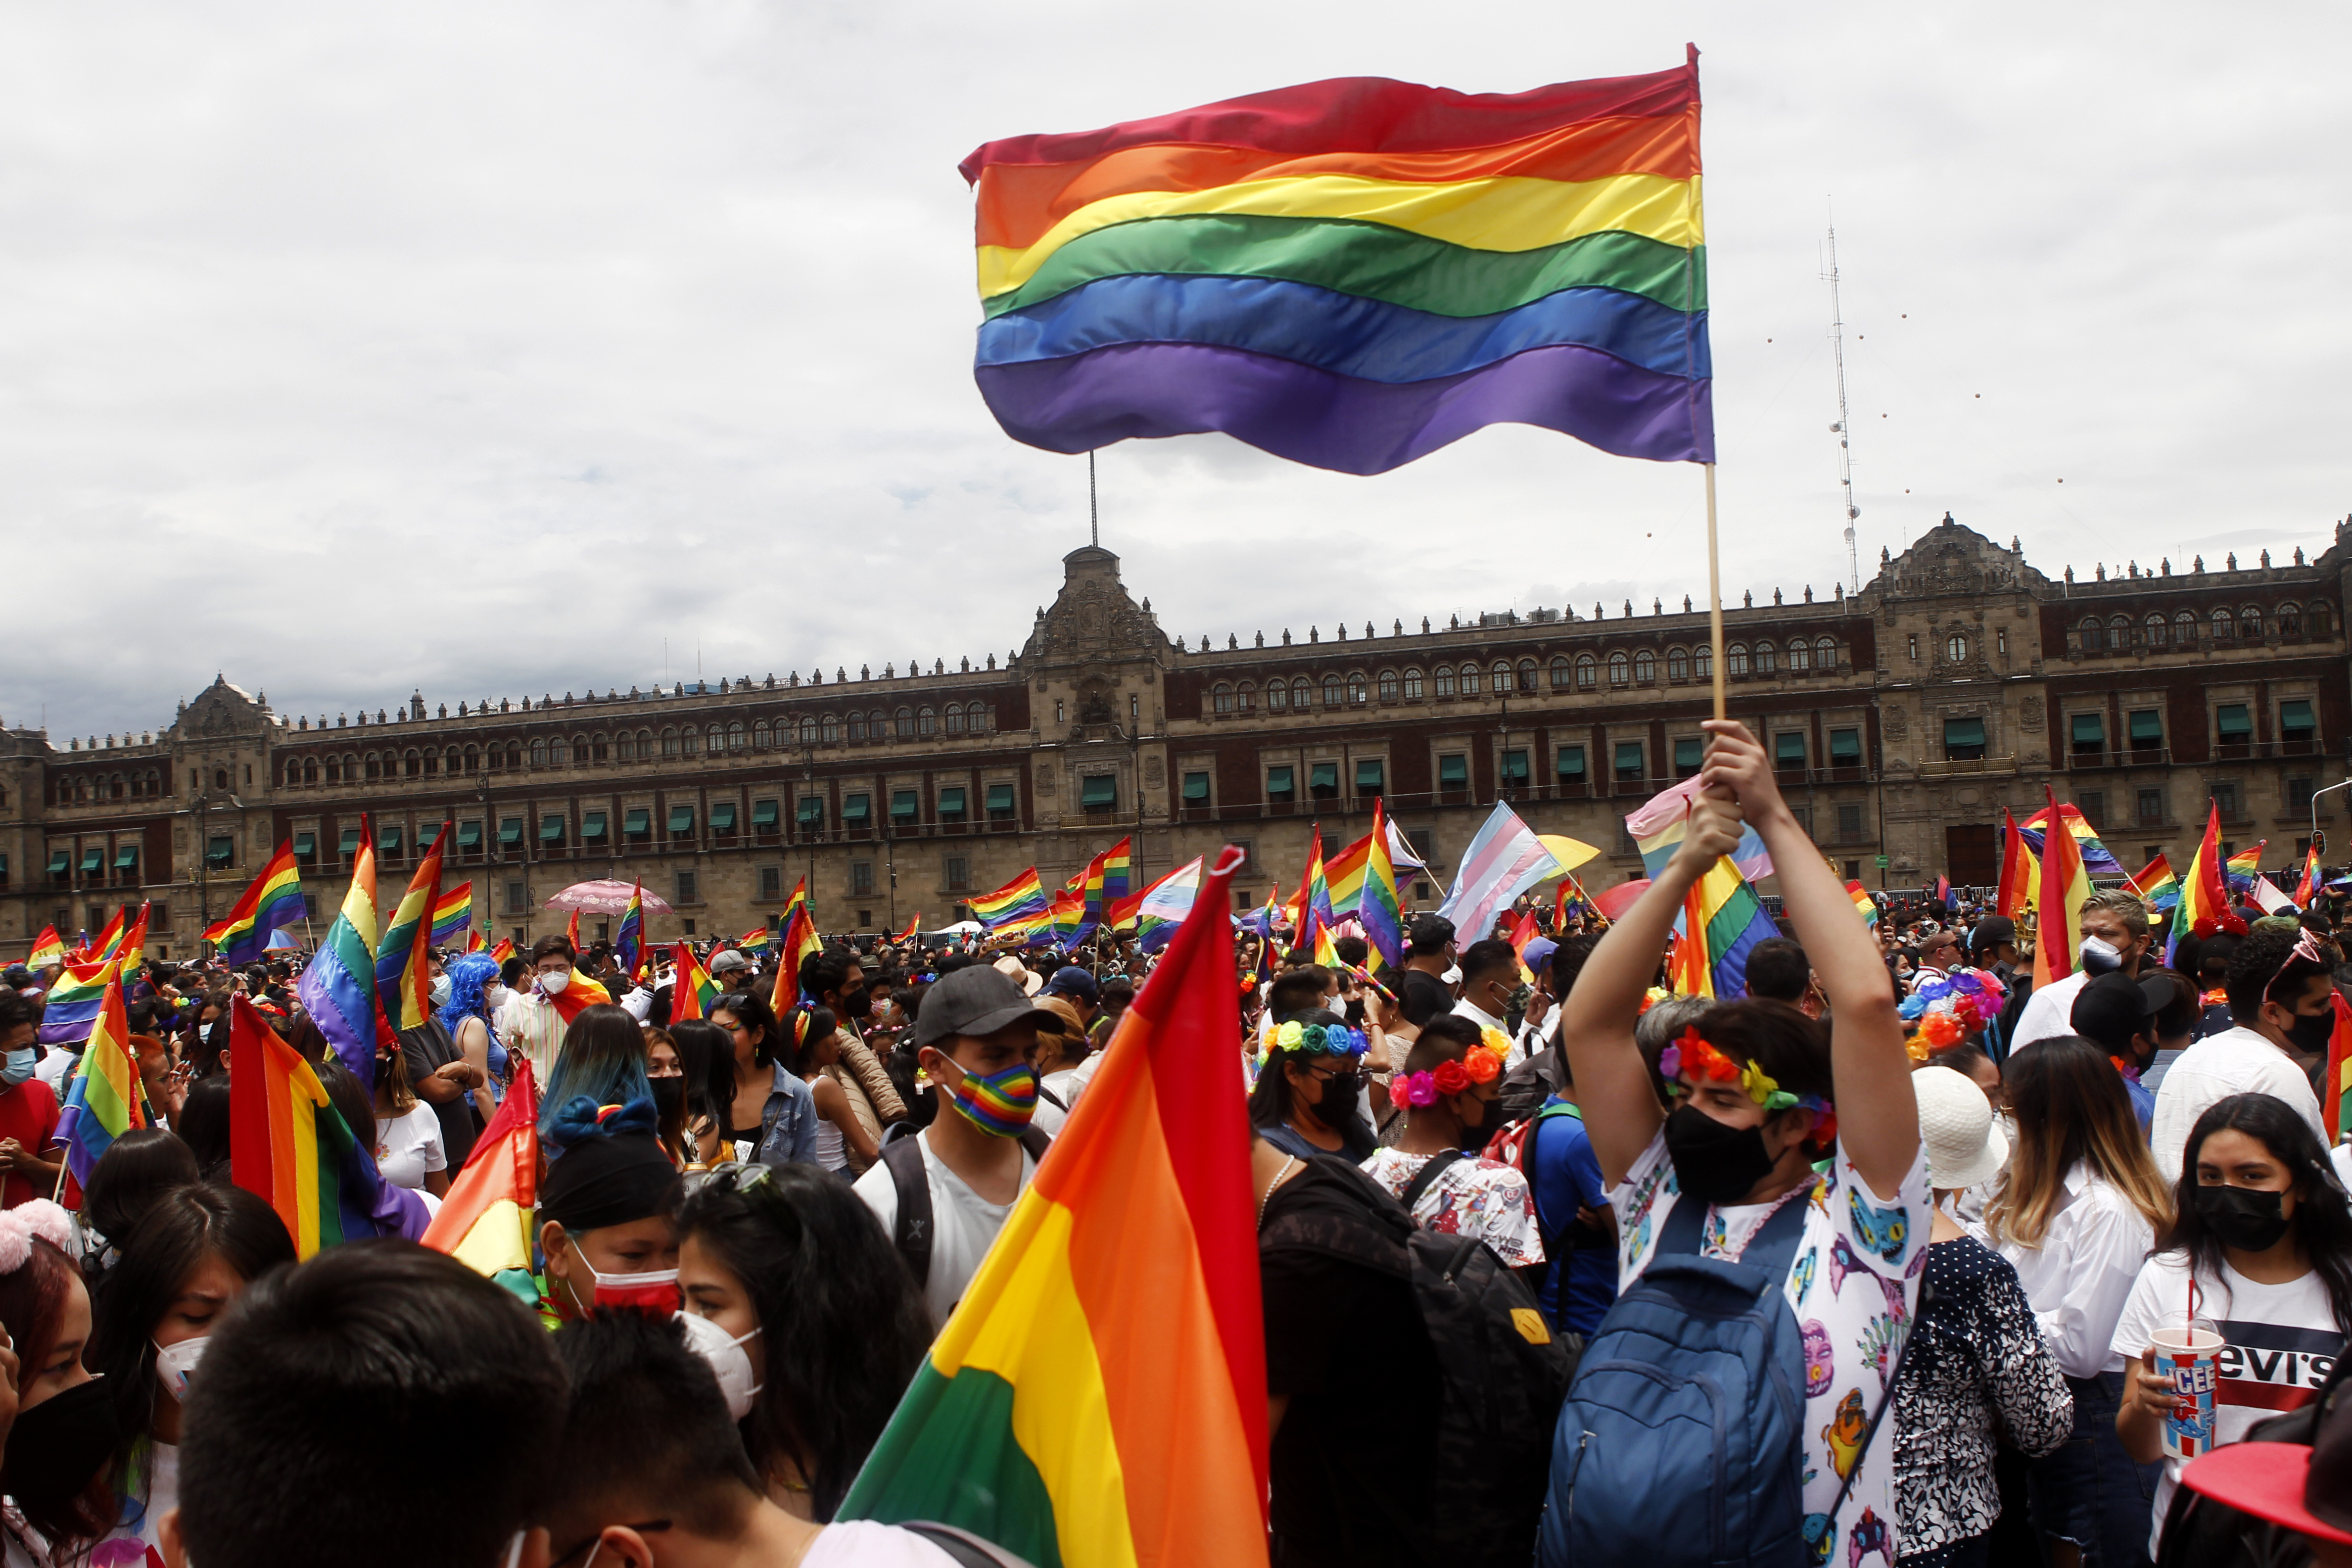 Las autoridades informaron que la marcha atrajo a cerca de 20 mil participantes (Foto: Karina Herández / Infobae)